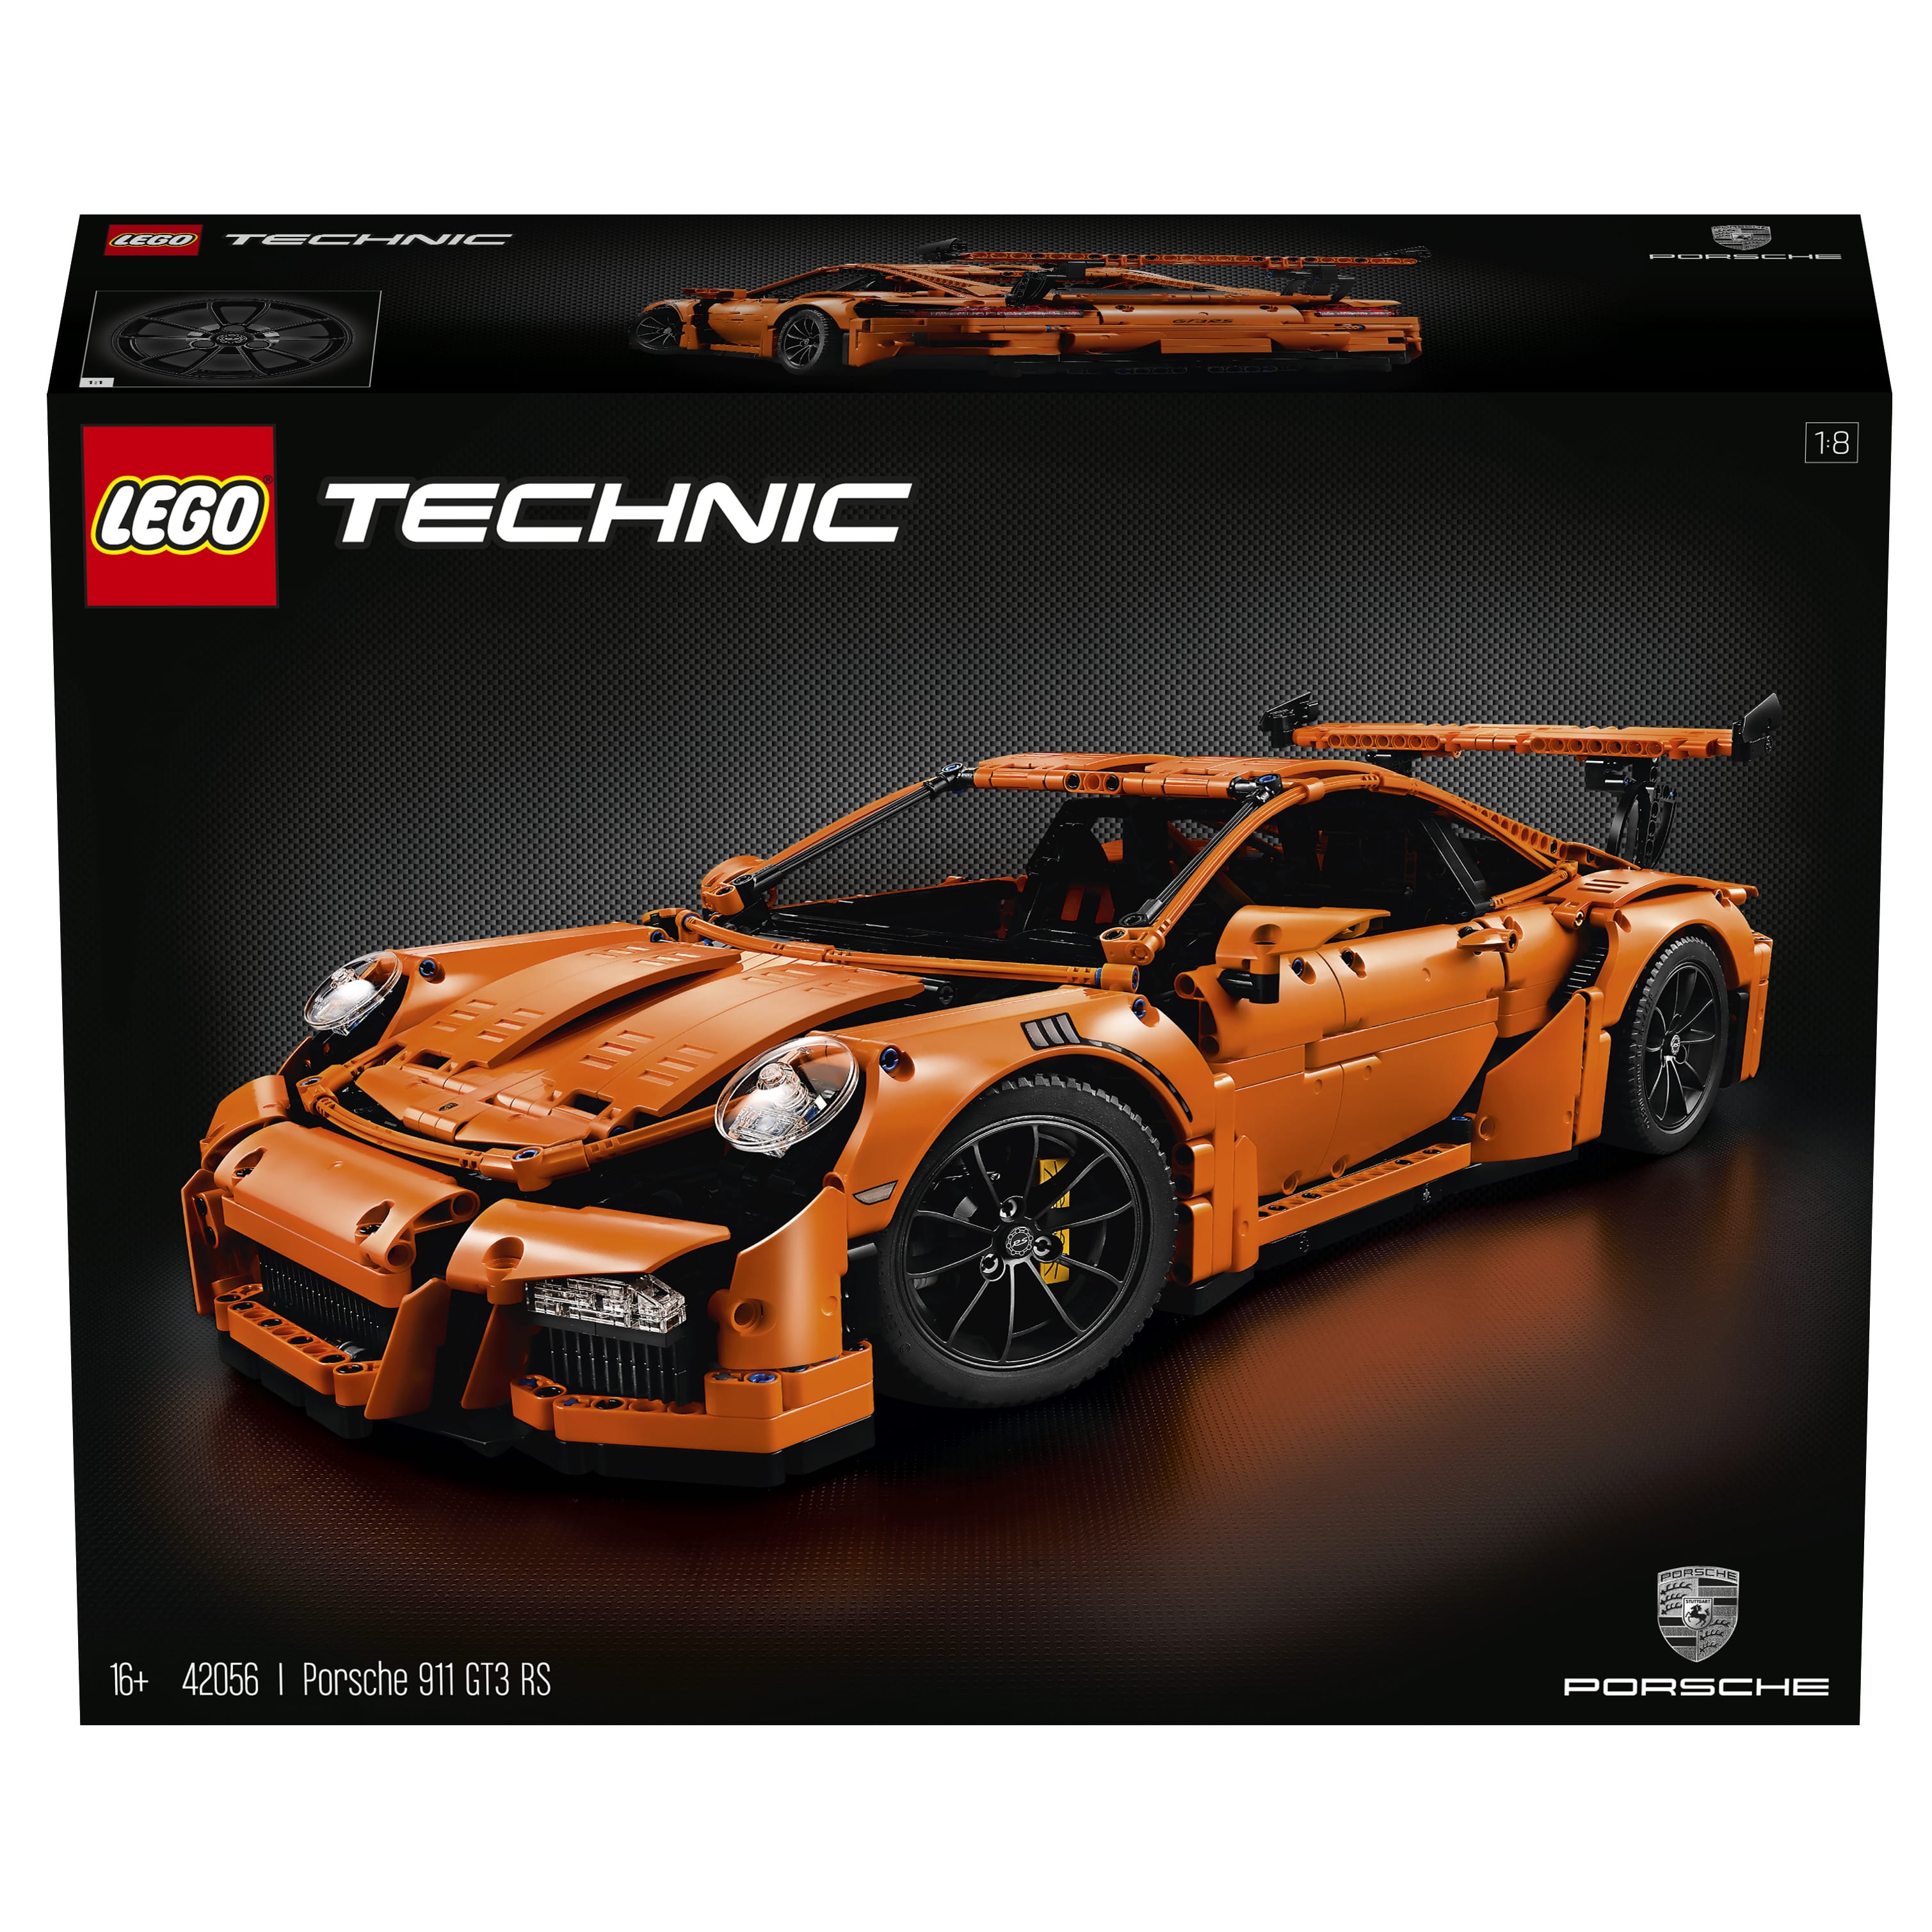 LEGO Technic Porsche 911 GT3 RS (42056) Officially ...